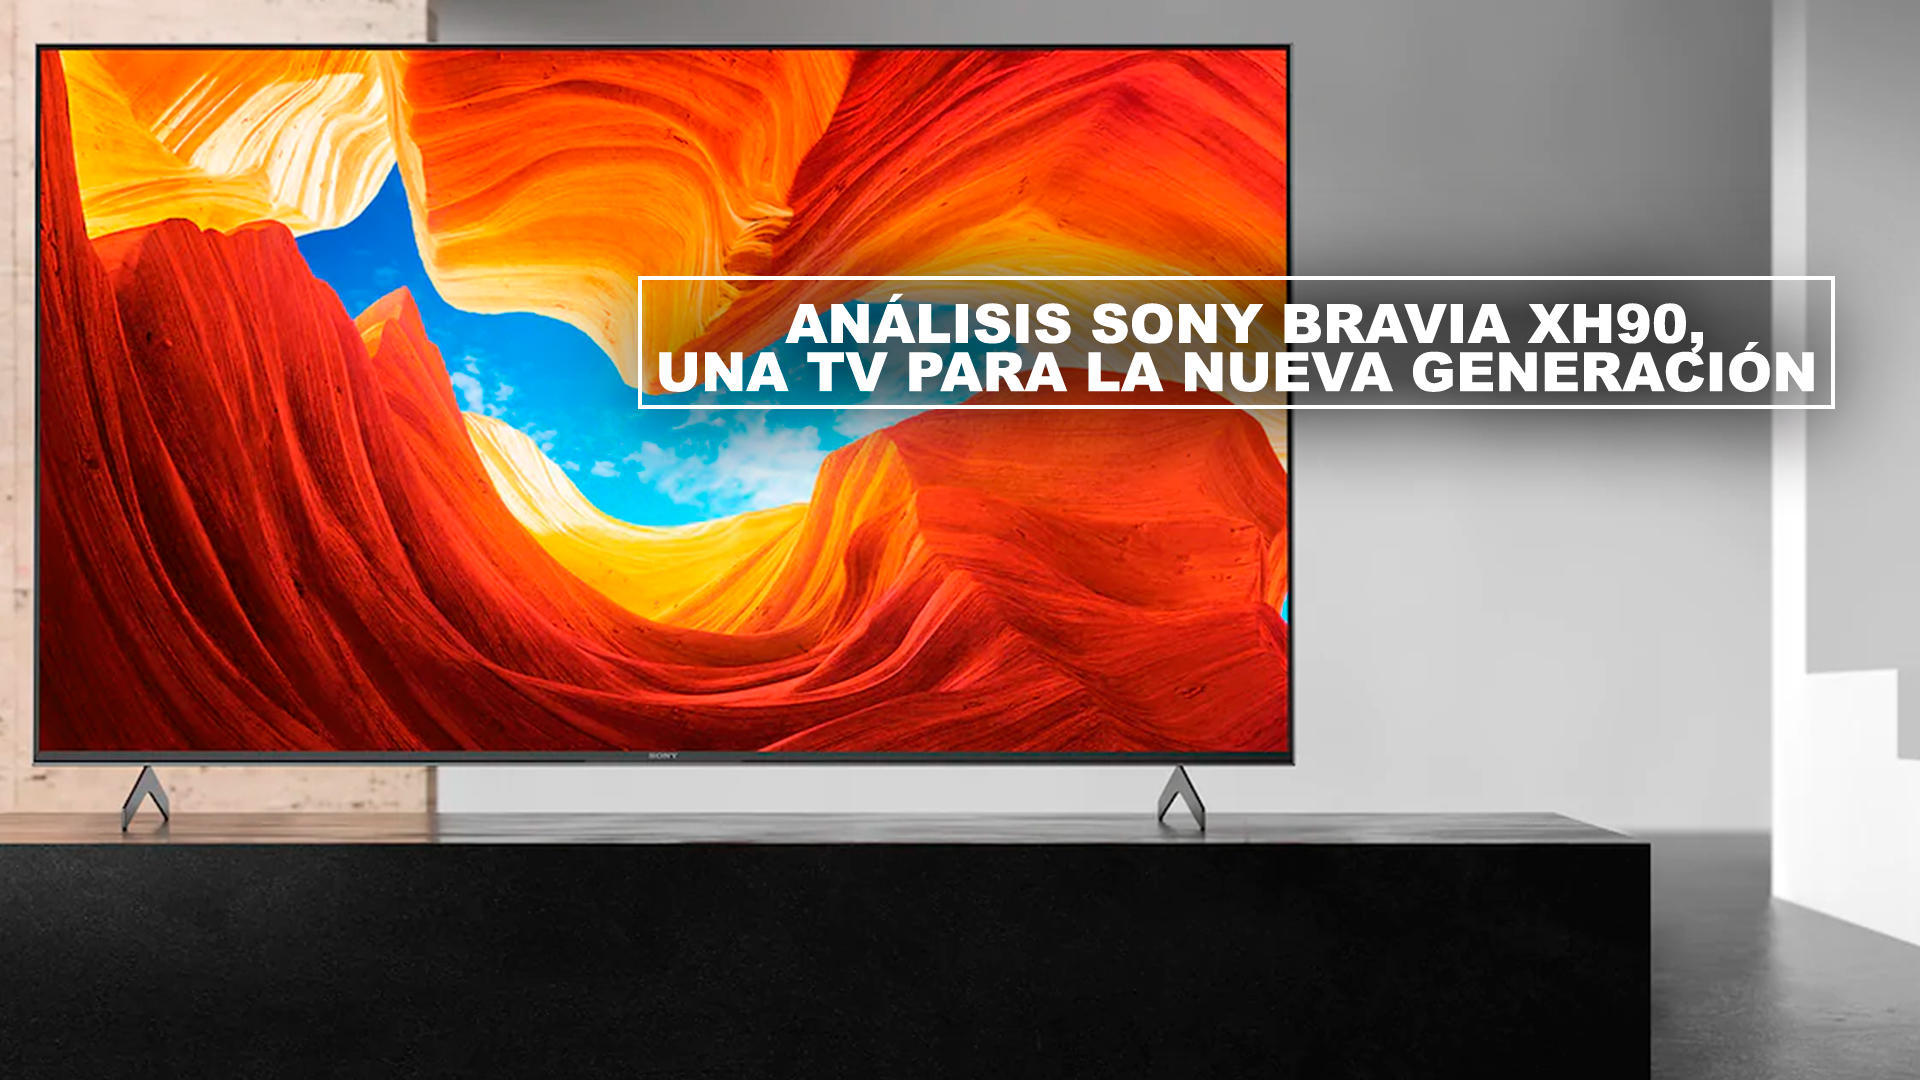 Anlisis Sony Bravia XH90, una TV para la nueva generacin